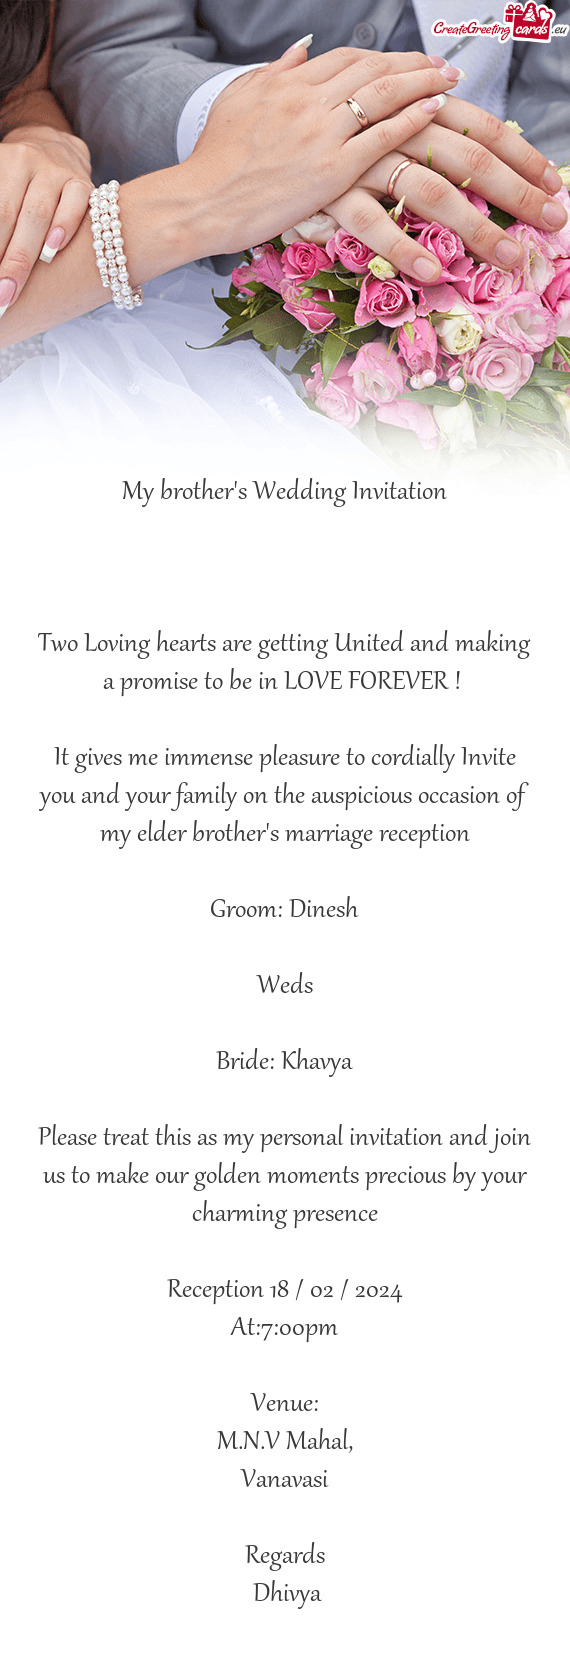 Bride: Khavya